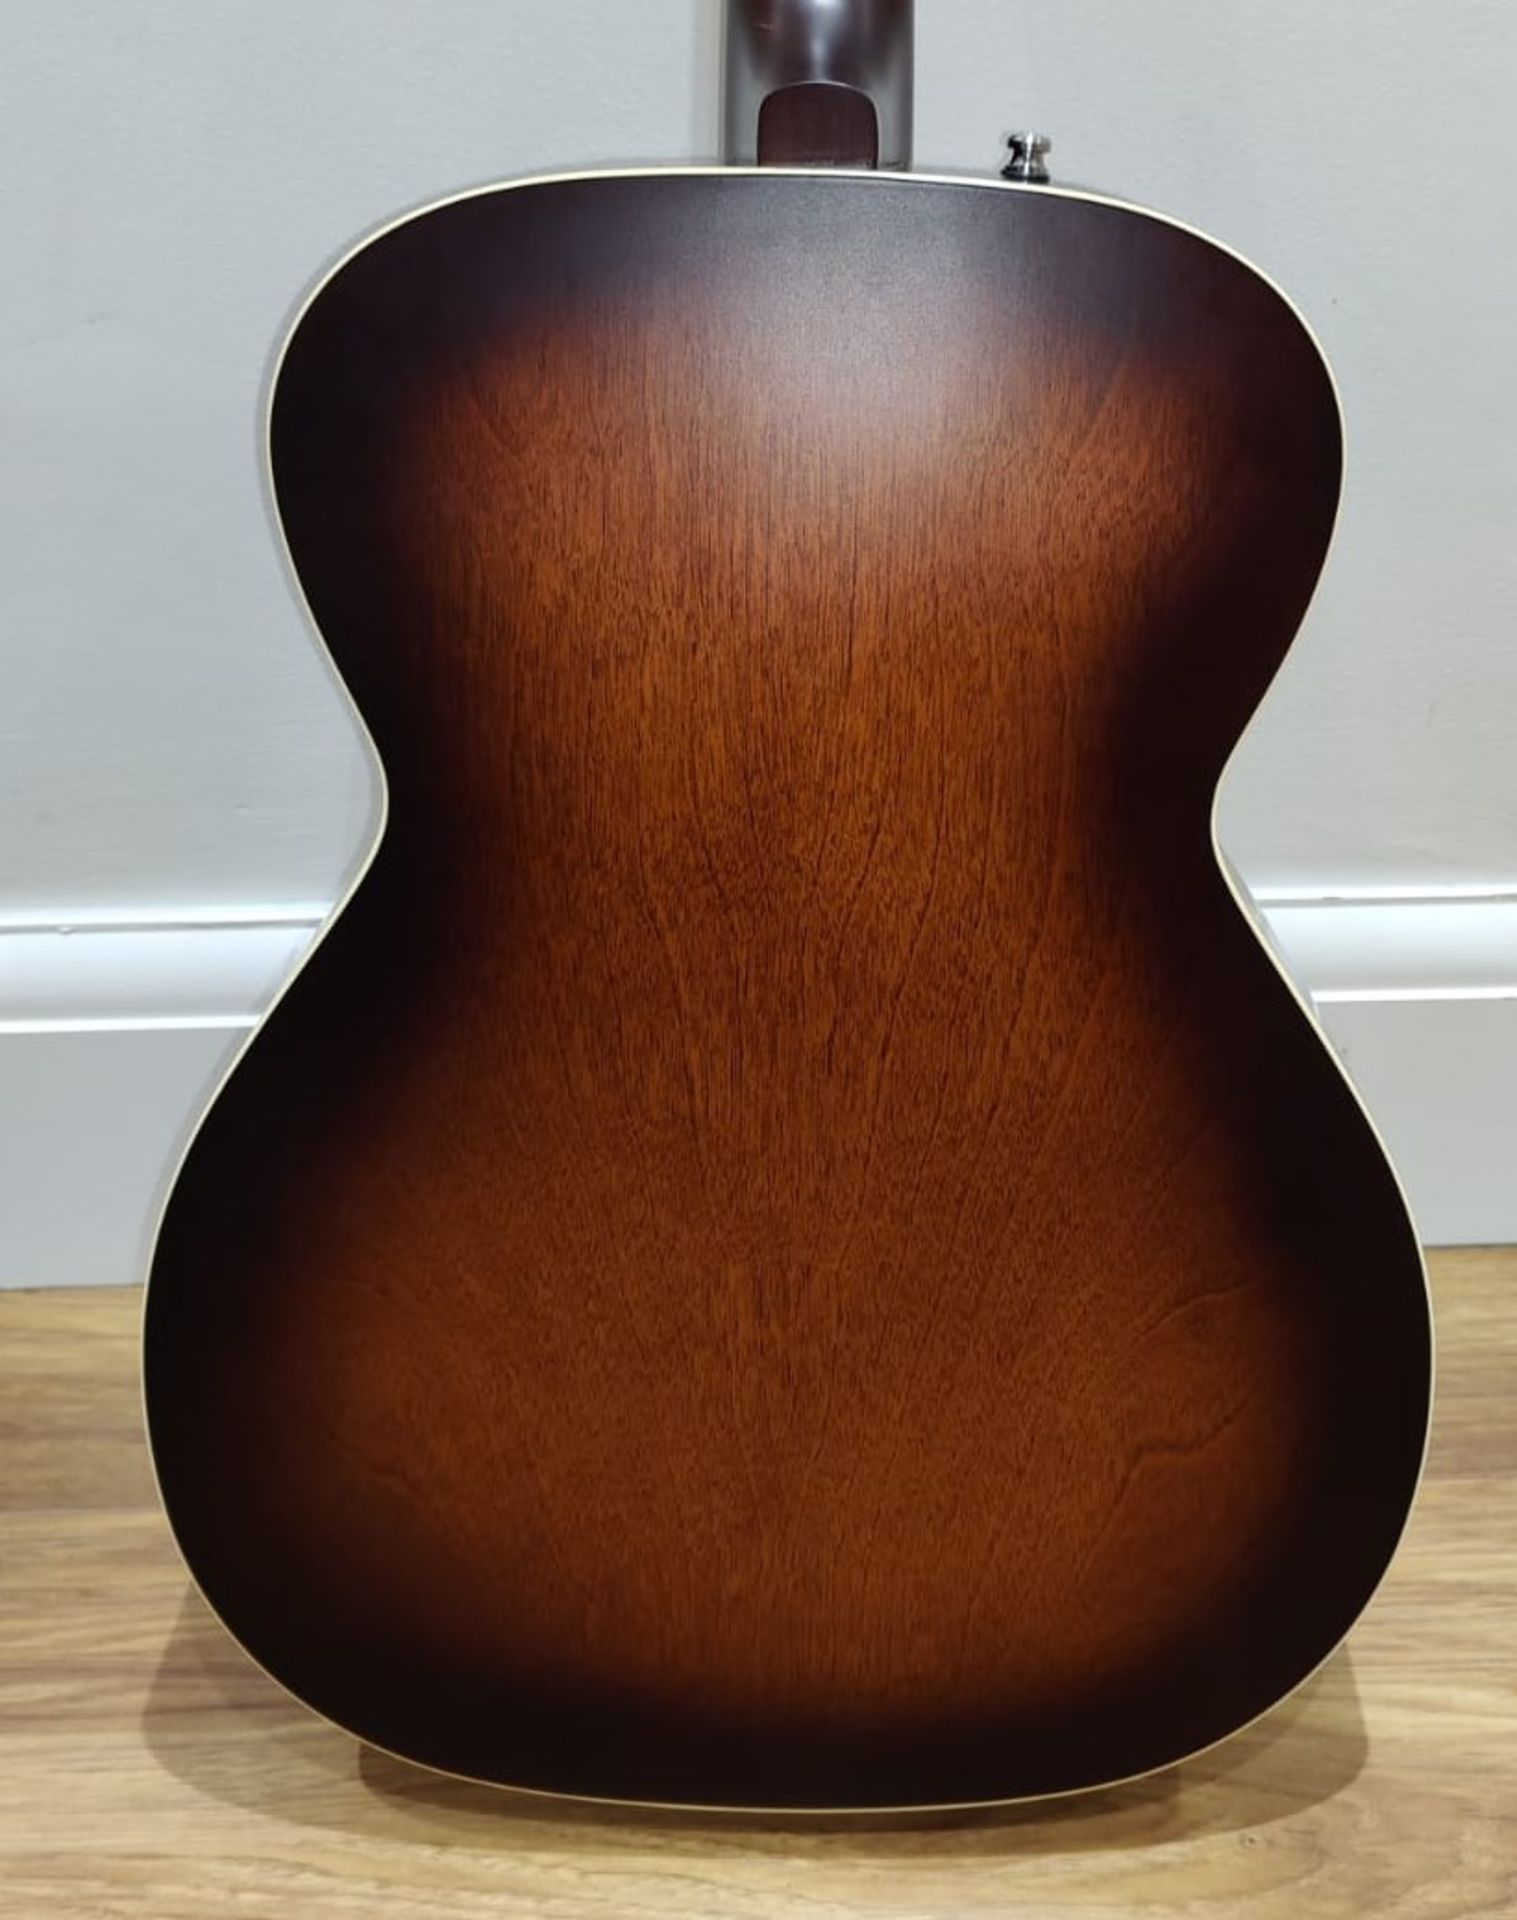 1 x Seagull S6 Original Slim Burnt Umber Dreadnaught Electro Acoustic Guitar - RRP £600 - Very - Image 14 of 14